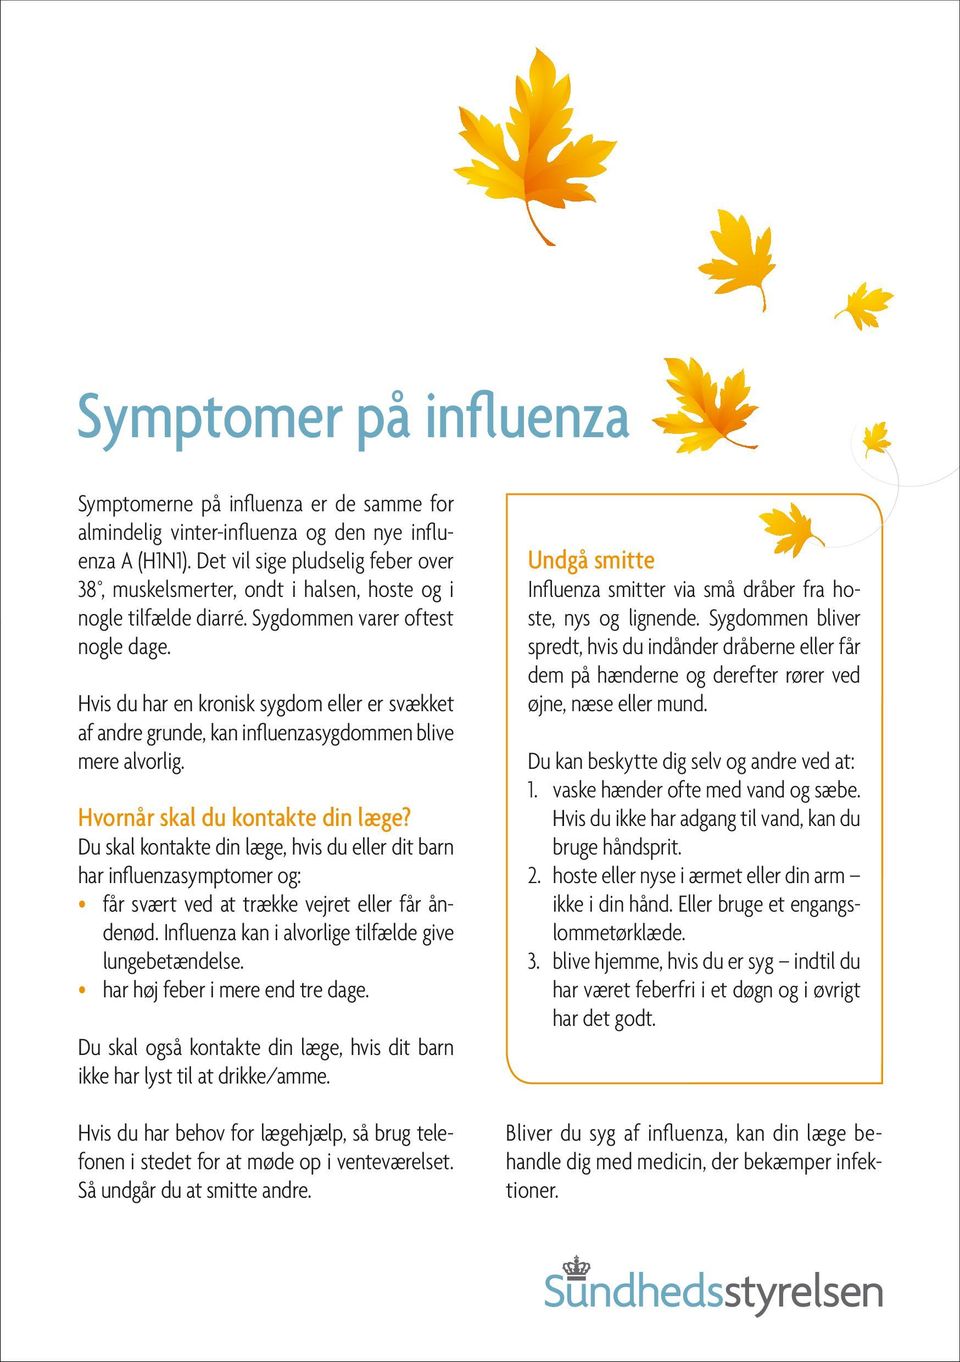 Hvis du har en kronisk sygdom eller er svækket af andre grunde, kan influenzasygdommen blive mere alvorlig. Hvornår skal du kontakte din læge?